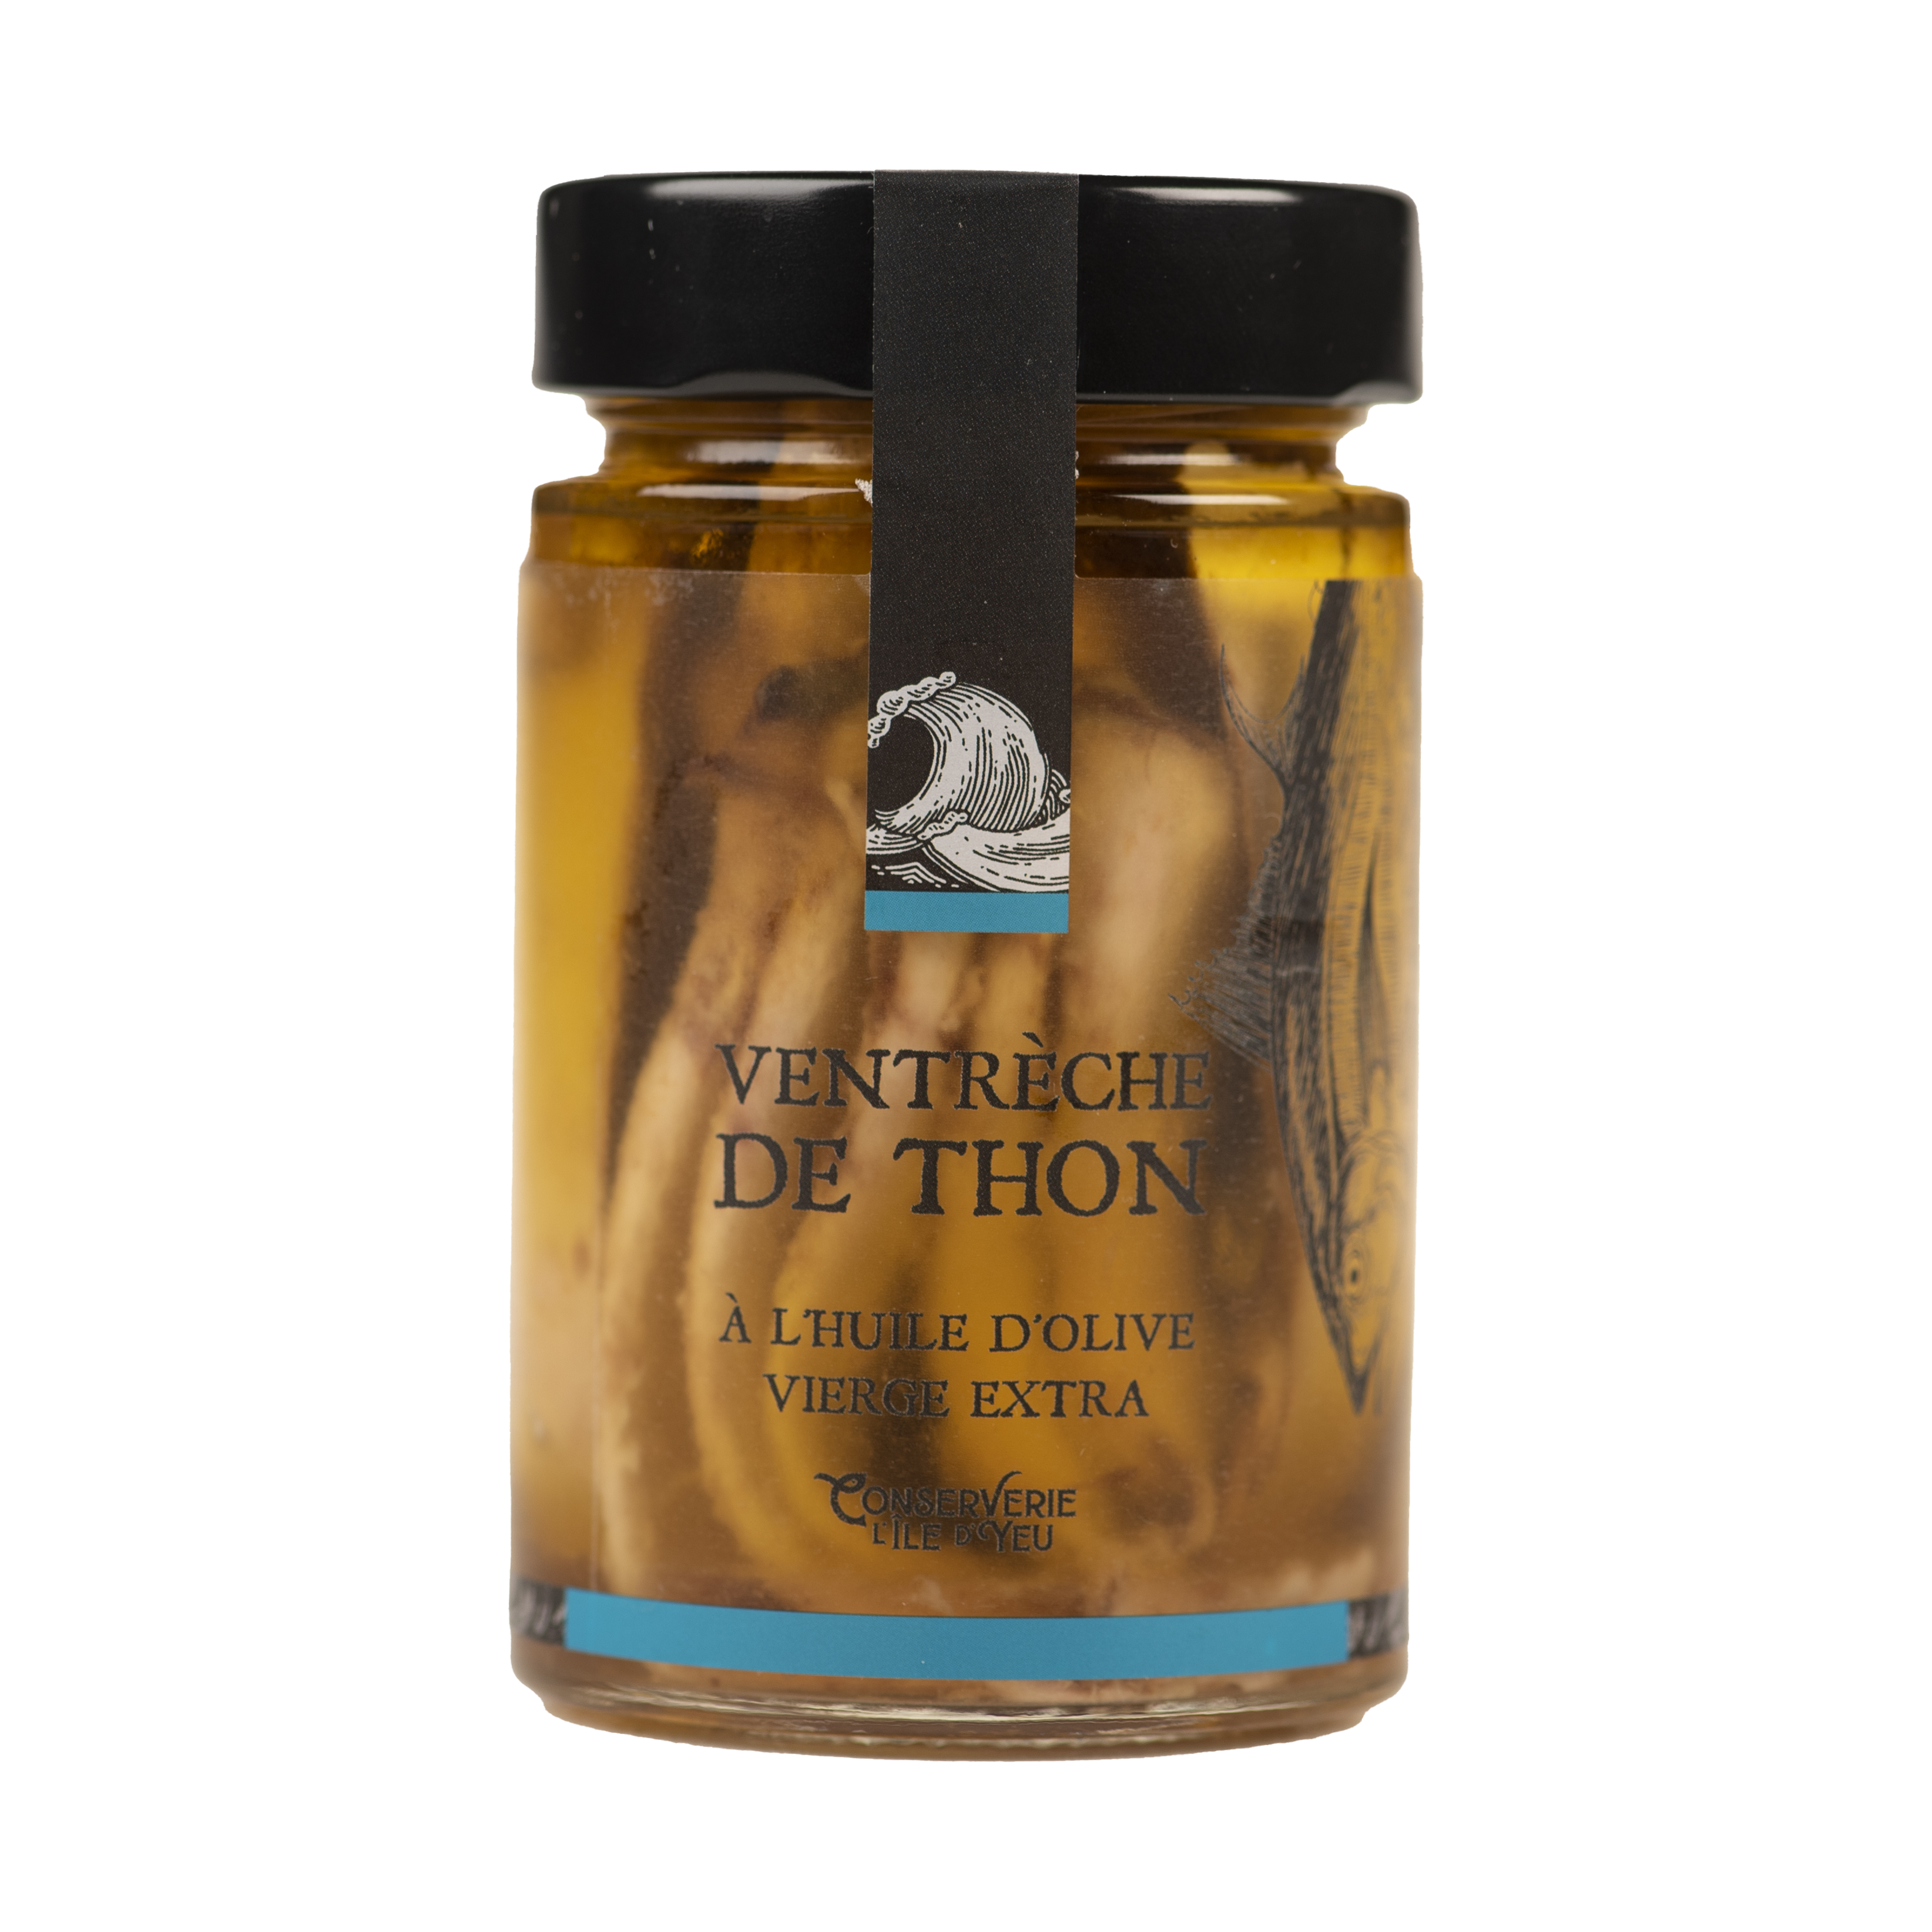 Bocal de thon rouge à l'huile d'olive 225g - Conserves artisanales La Chanca